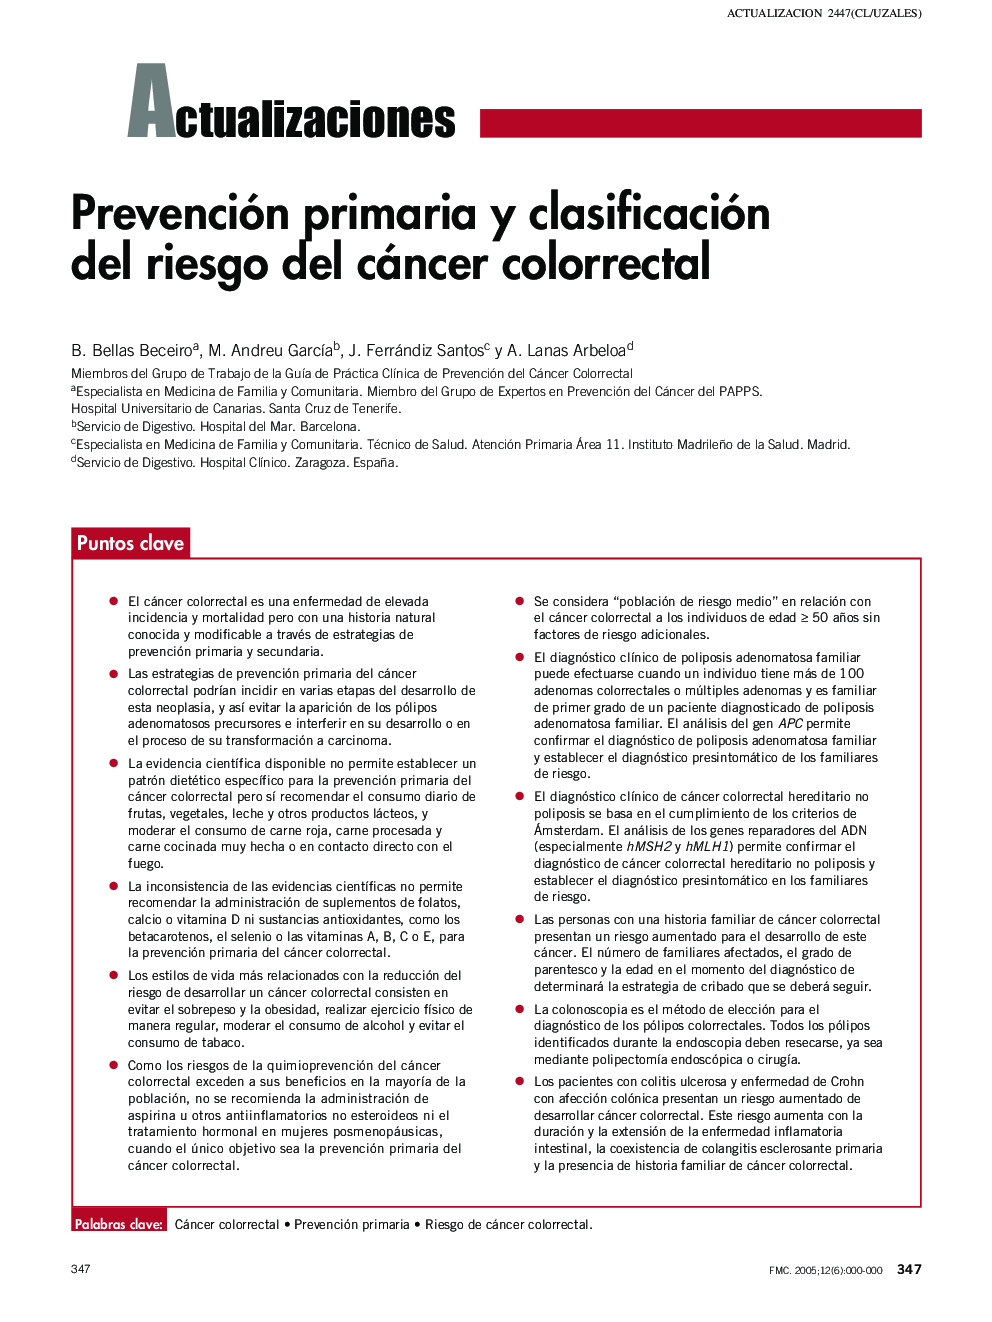 Prevención primaria y clasificación del riesgo del cáncer colorrectal